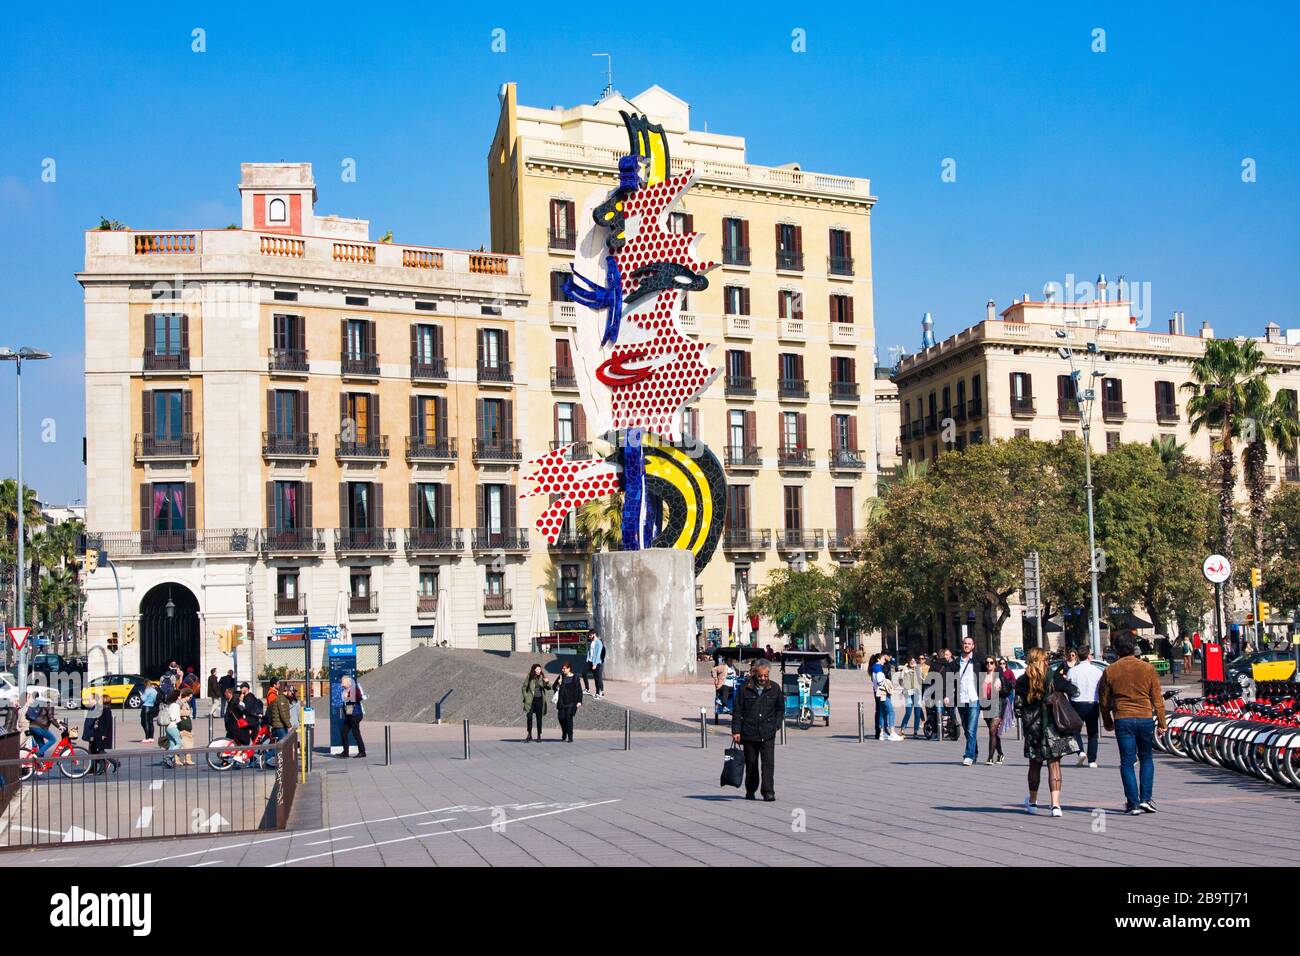 Barcelone, Espagne - 22 février 2020: La tête de Barcelone (la Cara o Cabeza de Barcelona) est une sculpture surréaliste créée par l'artiste pop américain Roy Lich Banque D'Images